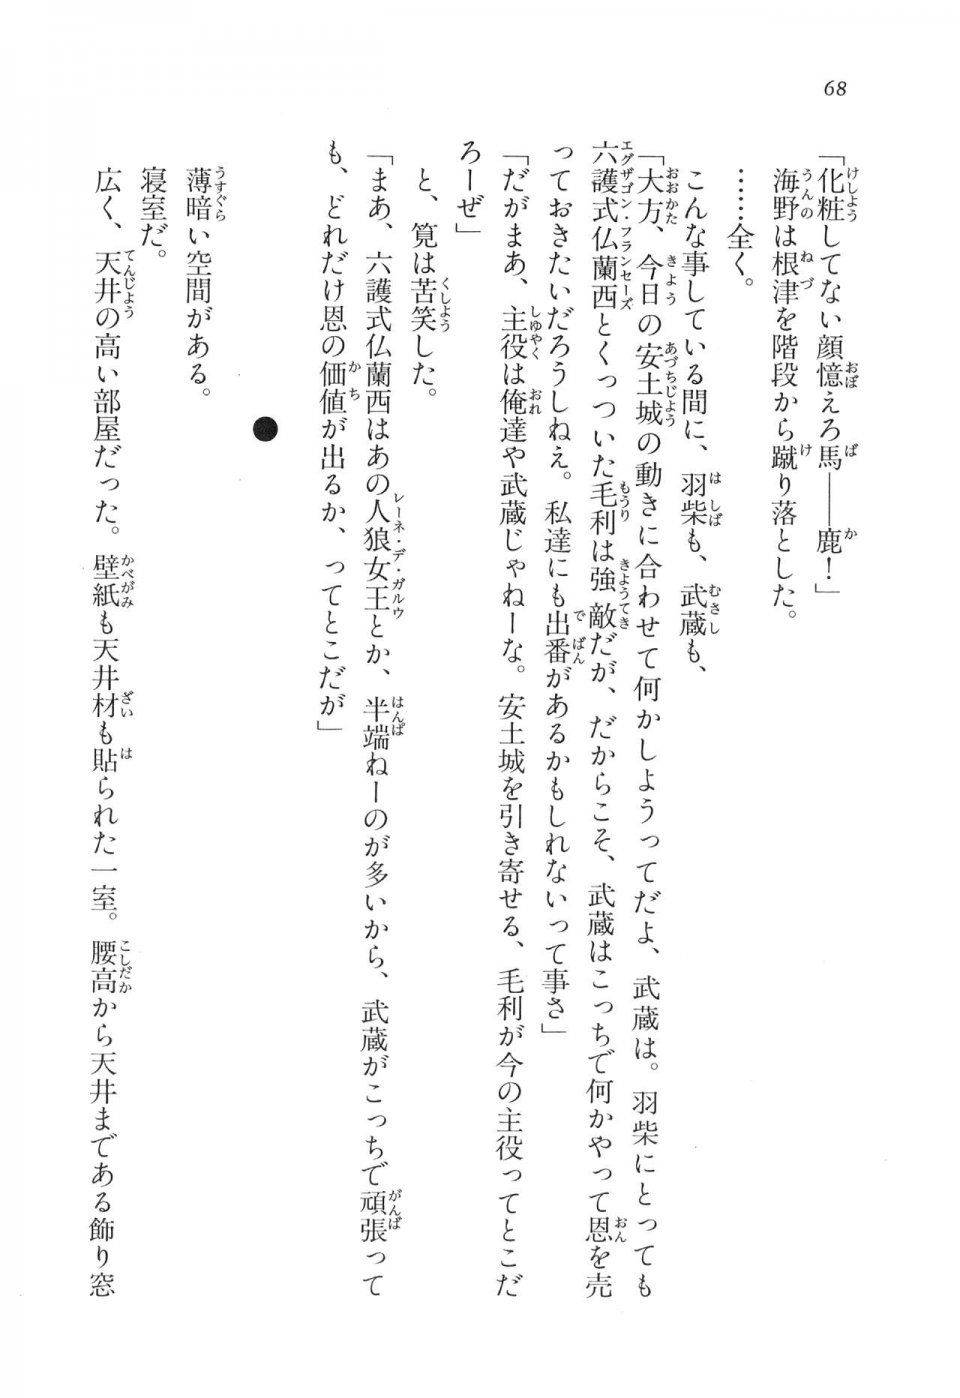 Kyoukai Senjou no Horizon LN Vol 11(5A) - Photo #68